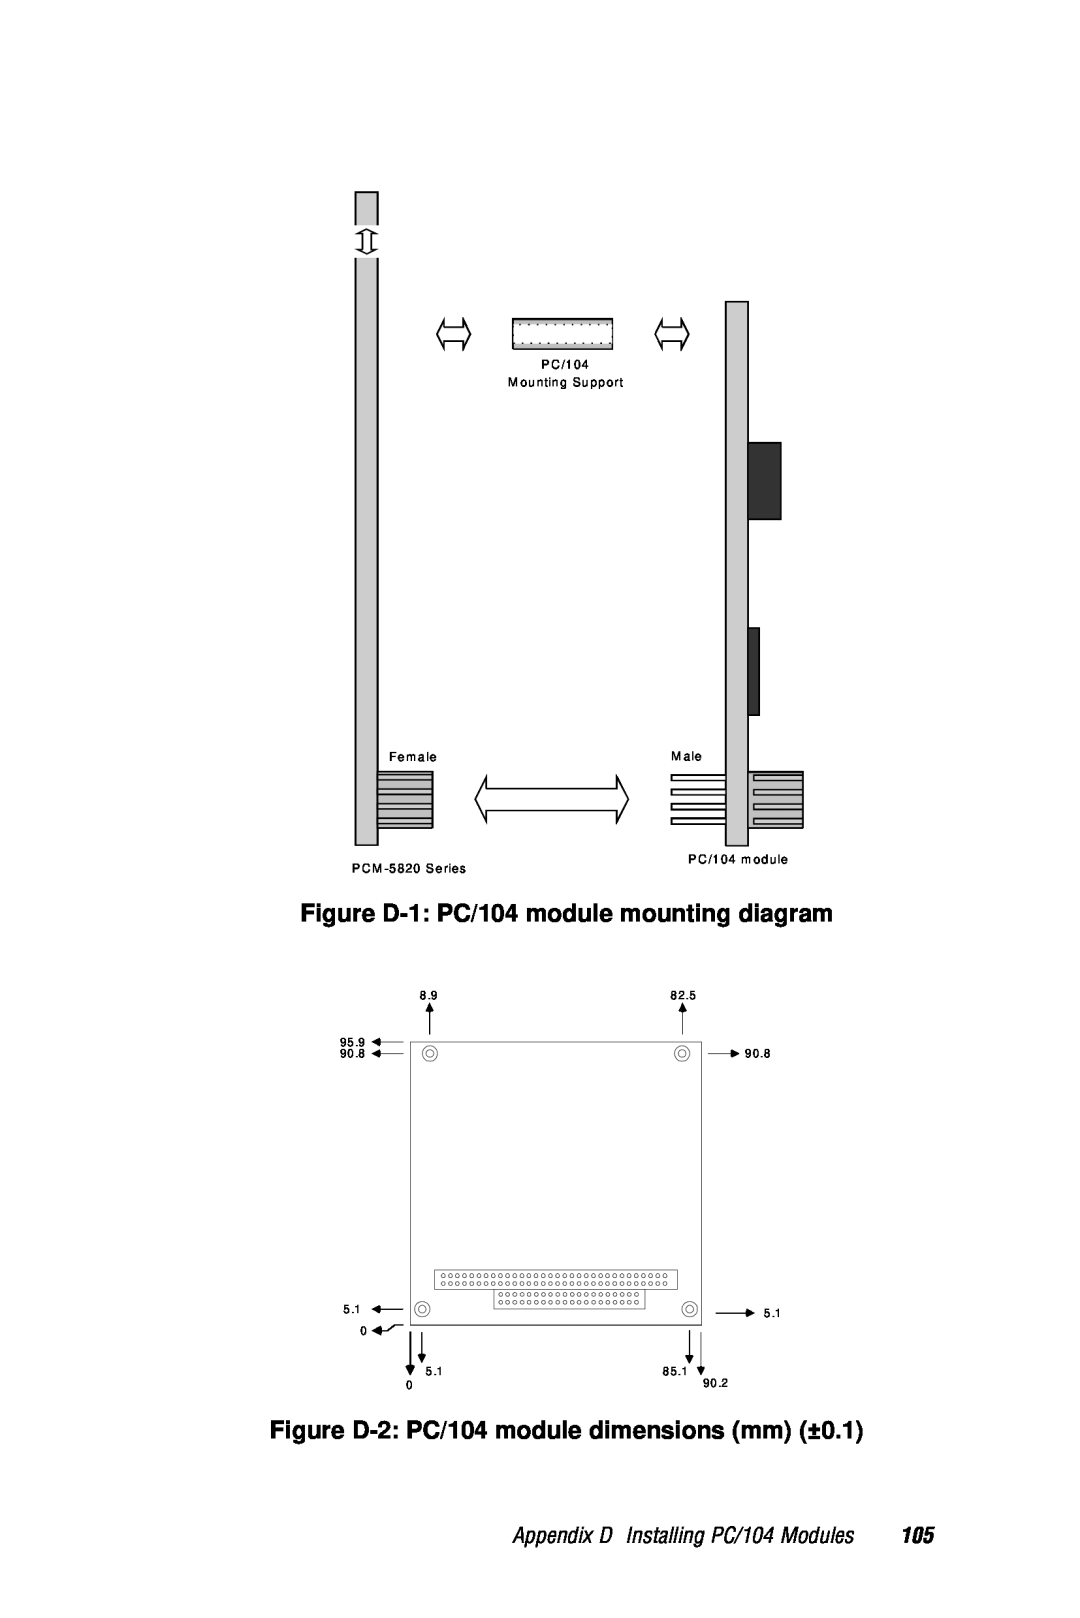 AMD PCM-5820 manual Figure D-1 PC/104 module mounting diagram, Figure D-2 PC/104 module dimensions mm ±0.1, Fem ale, M ale 